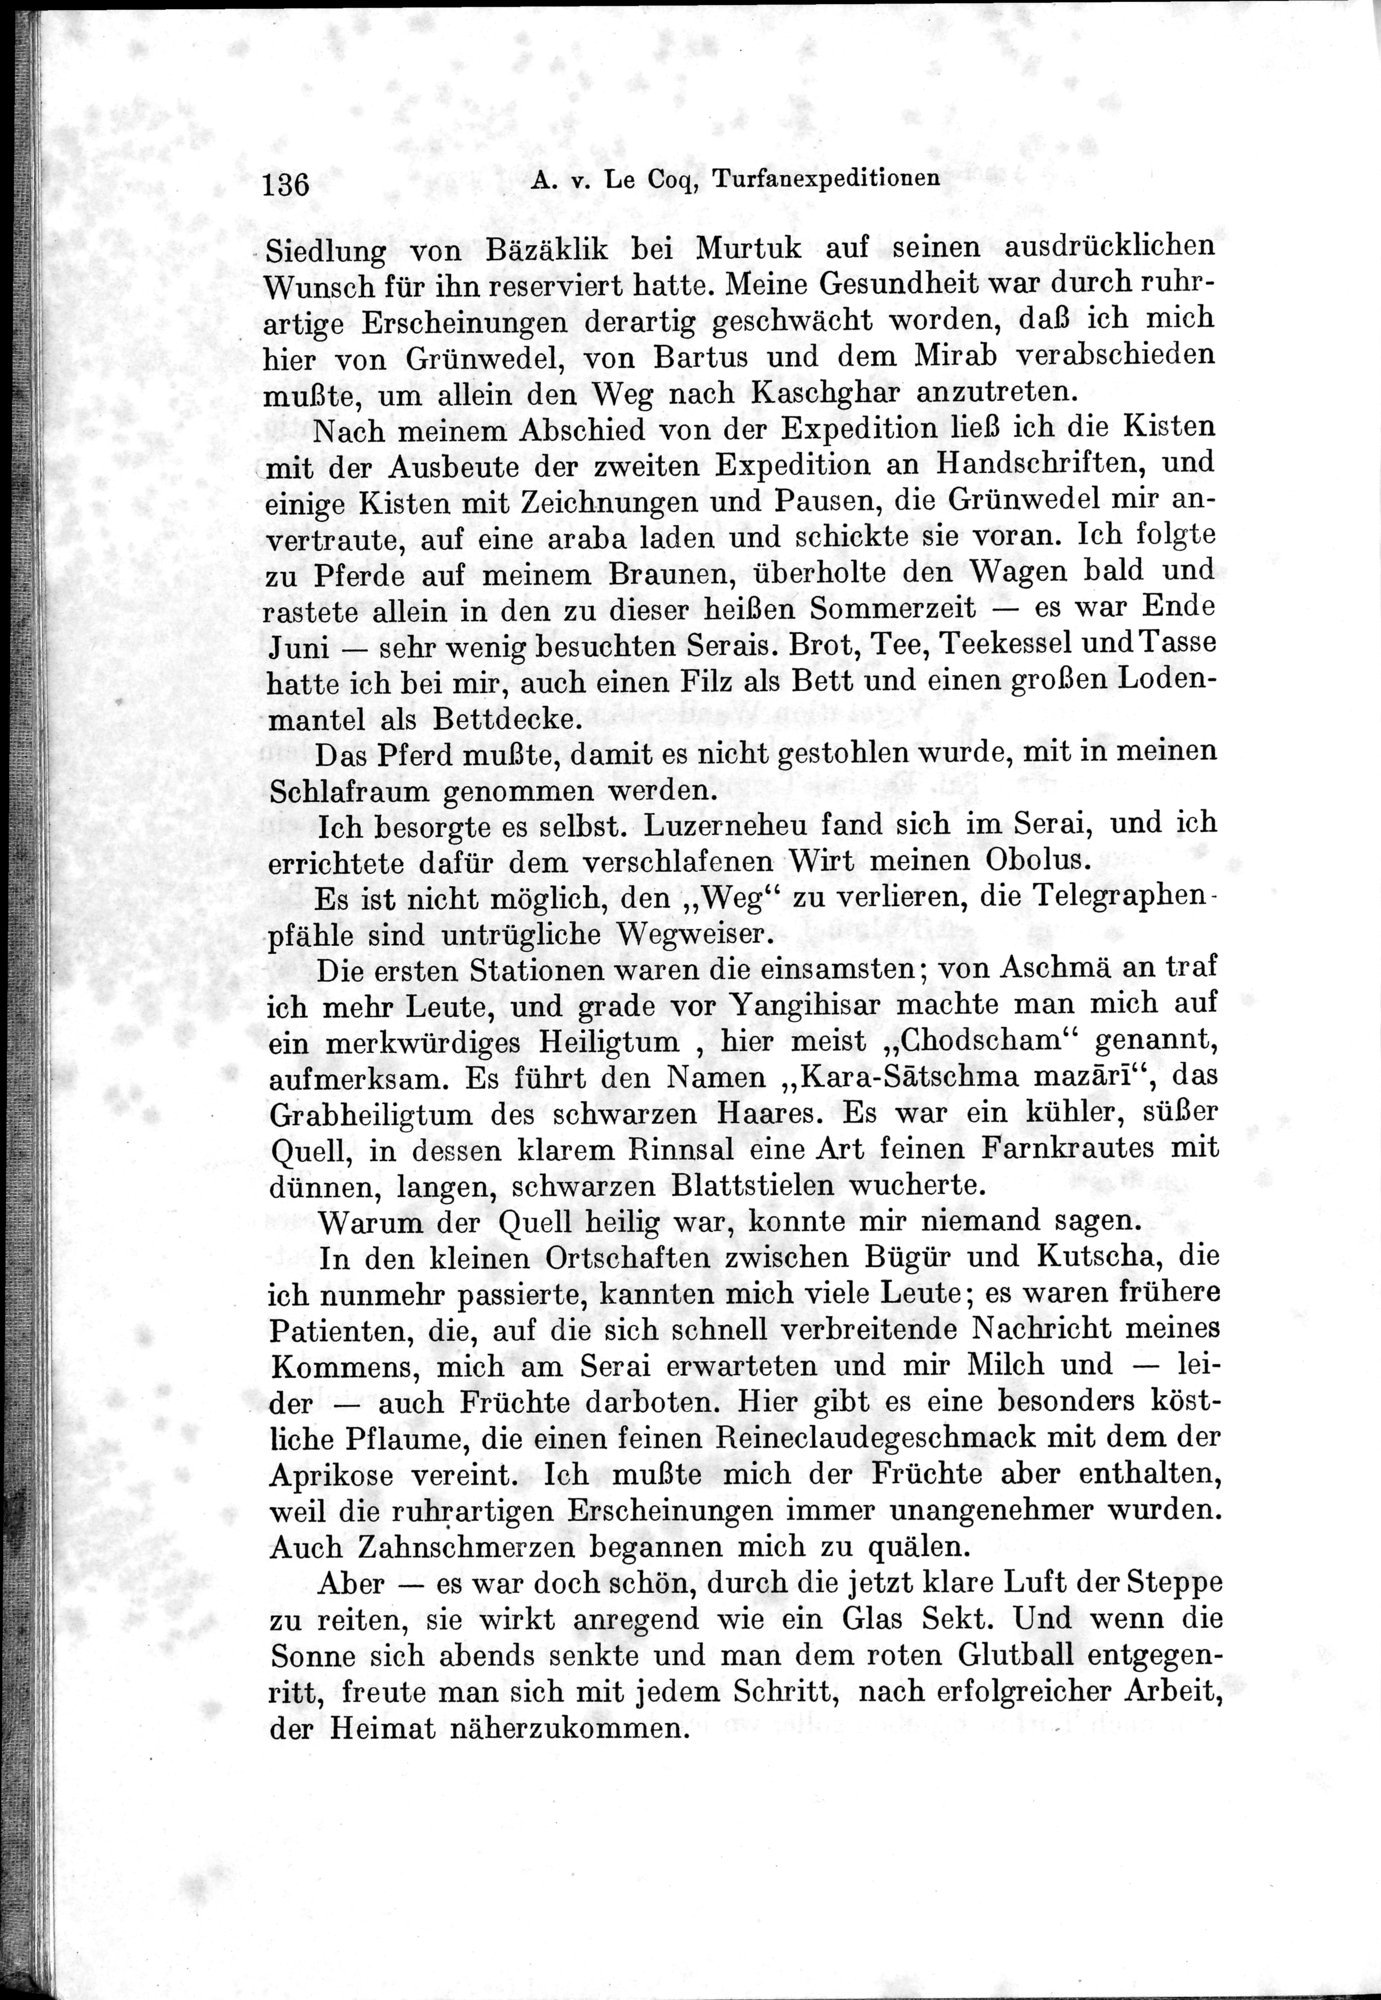 Auf Hellas Spuren in Ostturkistan : vol.1 / Page 194 (Grayscale High Resolution Image)